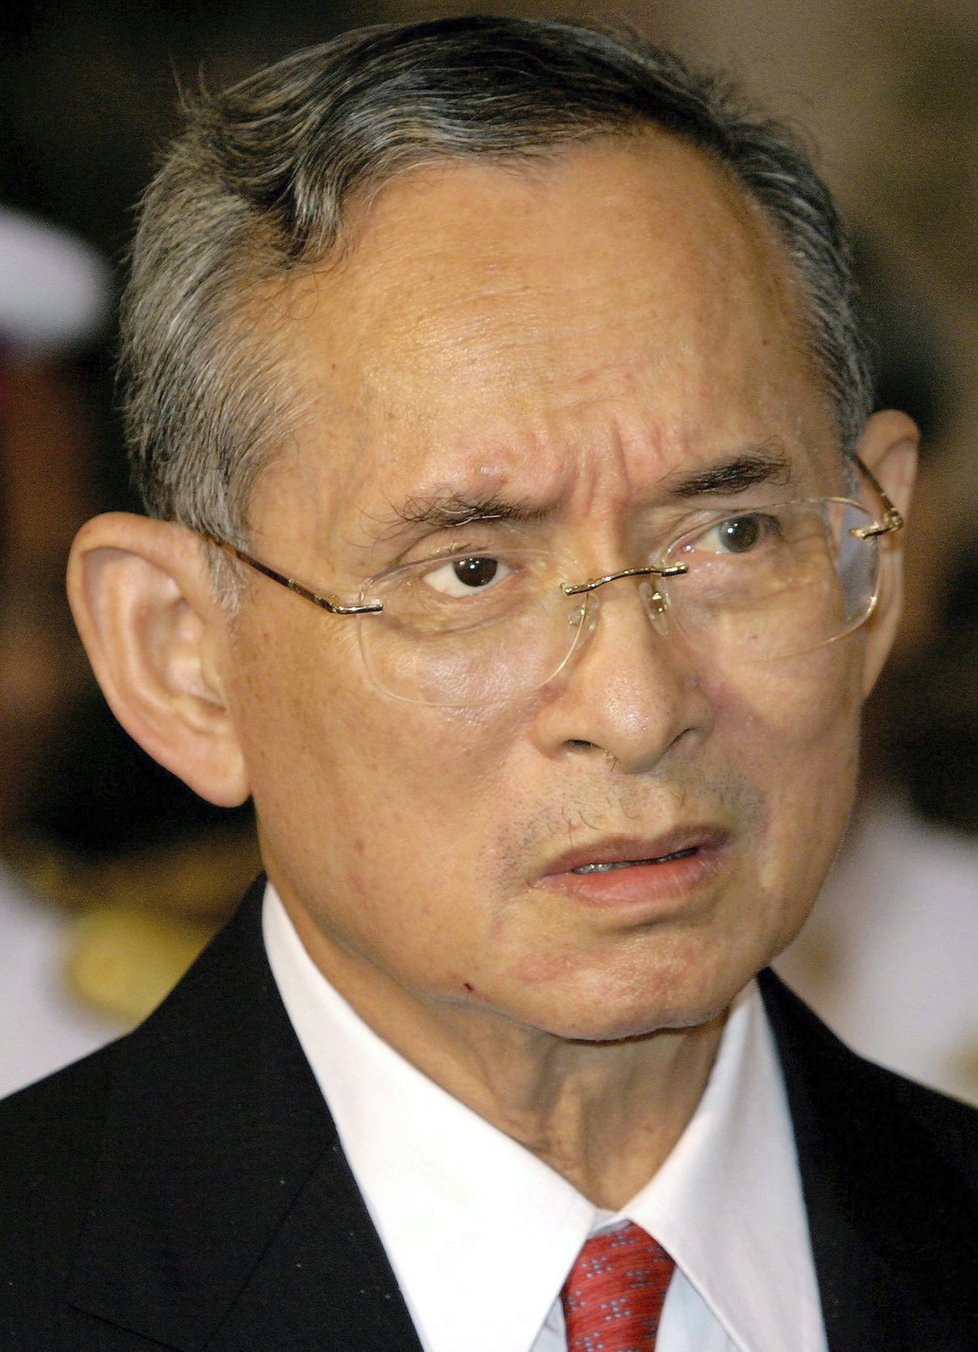 Thajský lid truchlil: Milovaný král Pchúmipchon Adundét zemřel ve věku 88 let.